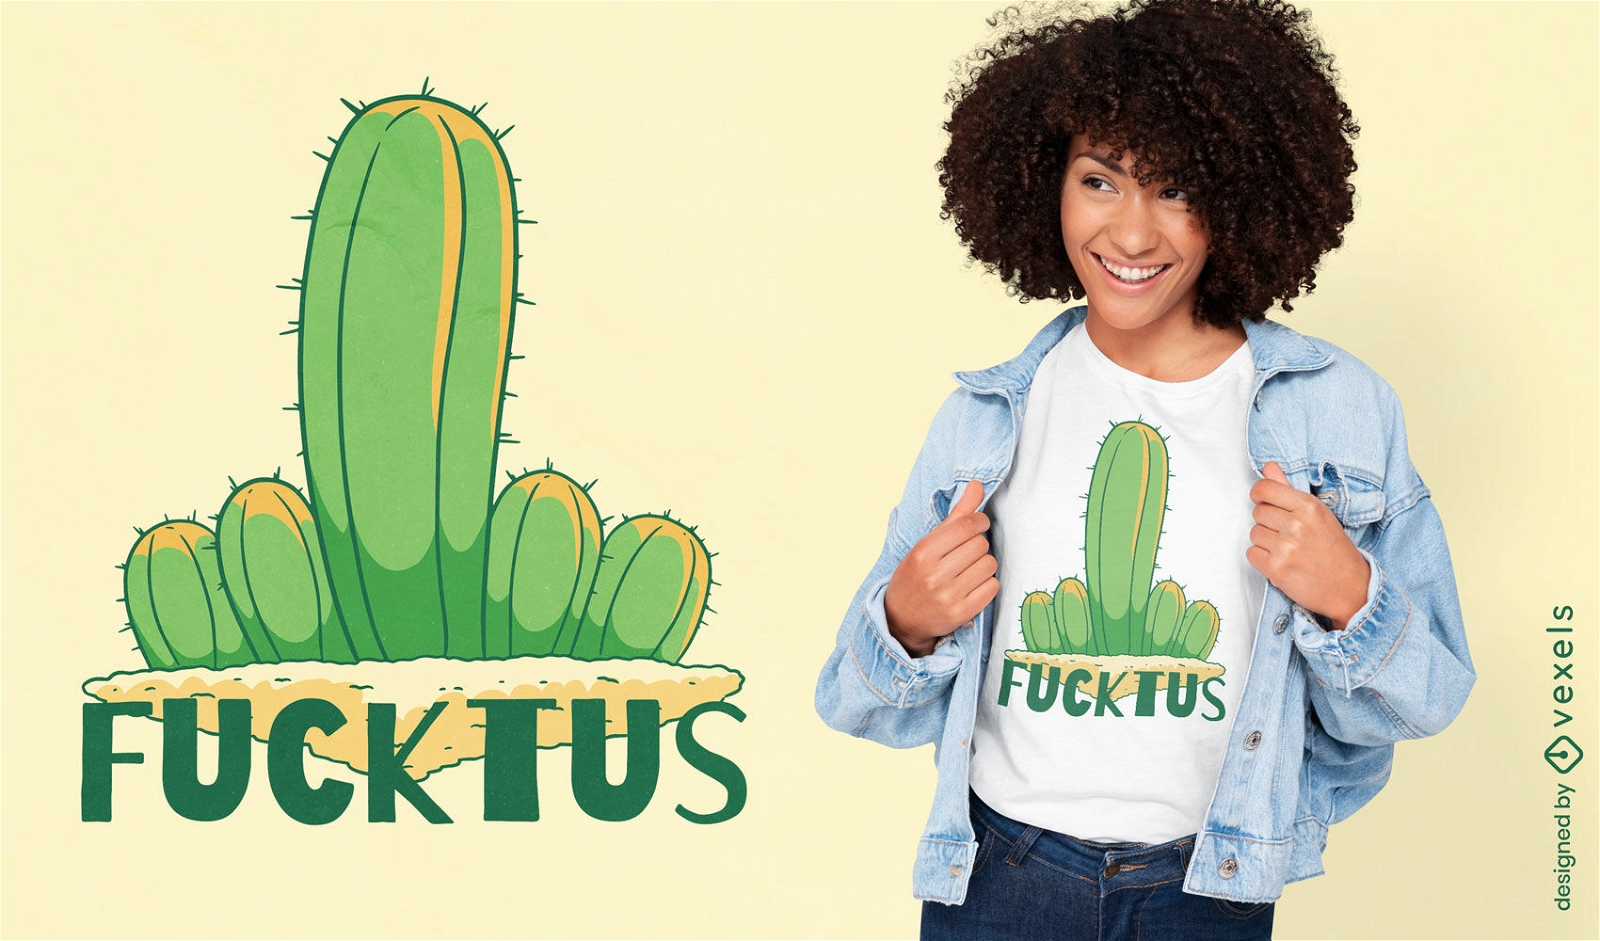 Dise?o de camiseta fucktus de dedo medio de cactus